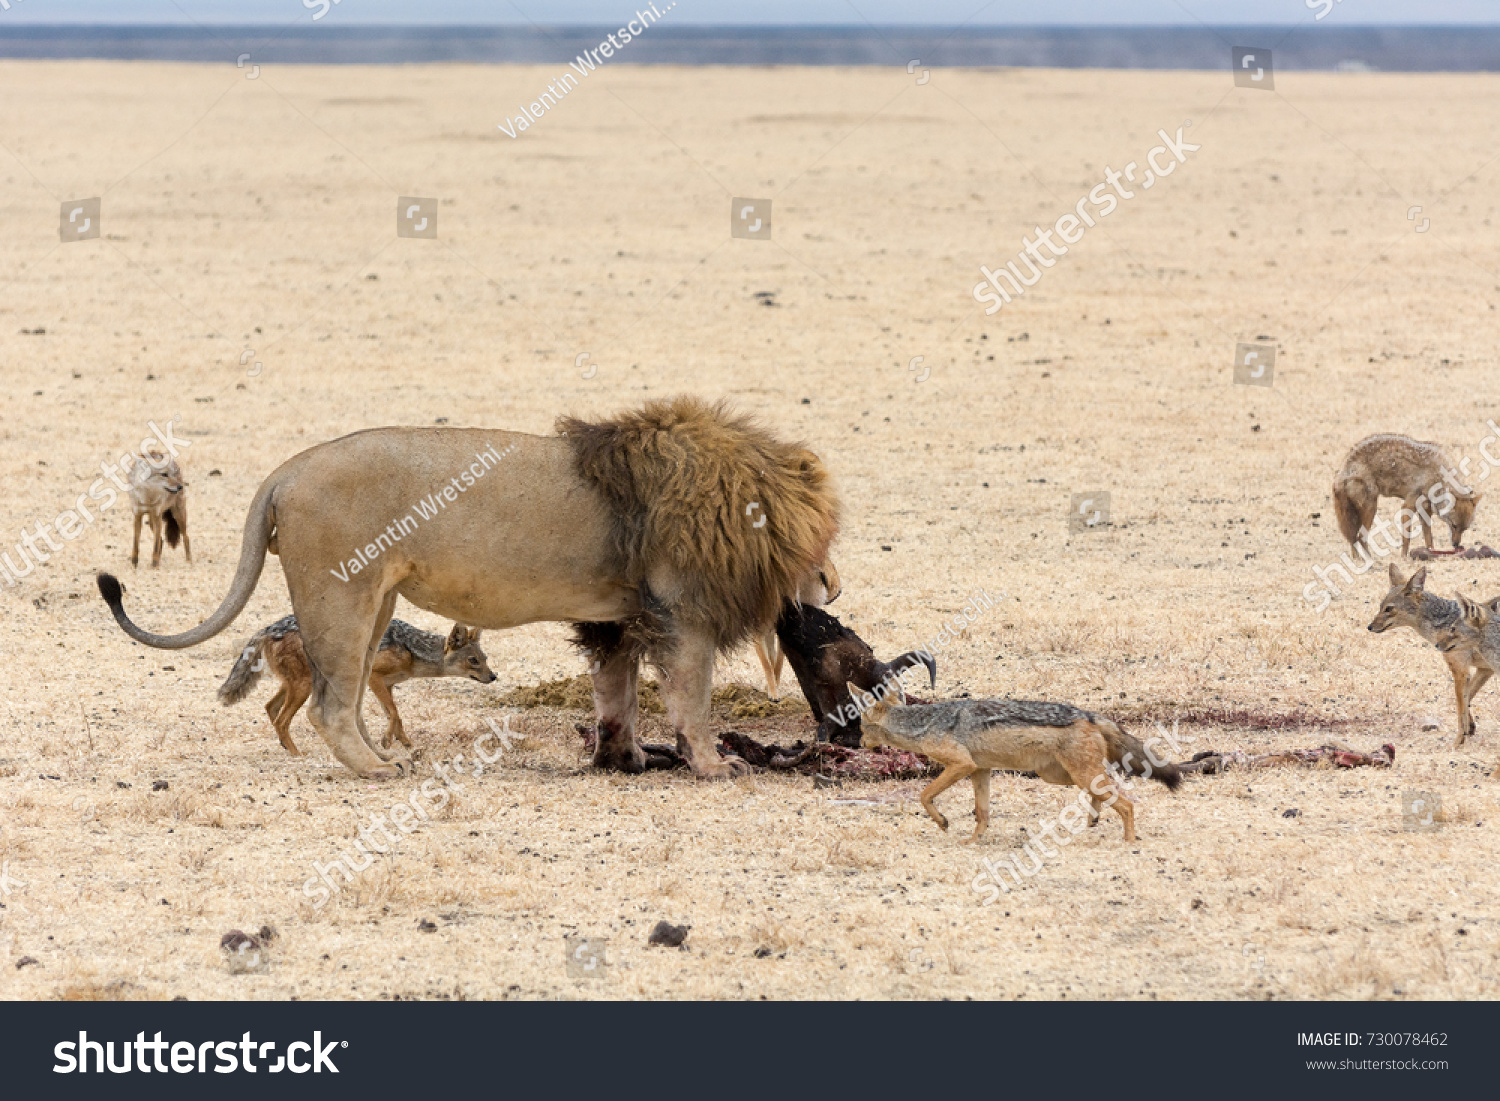 Do Lions Eat Jackals